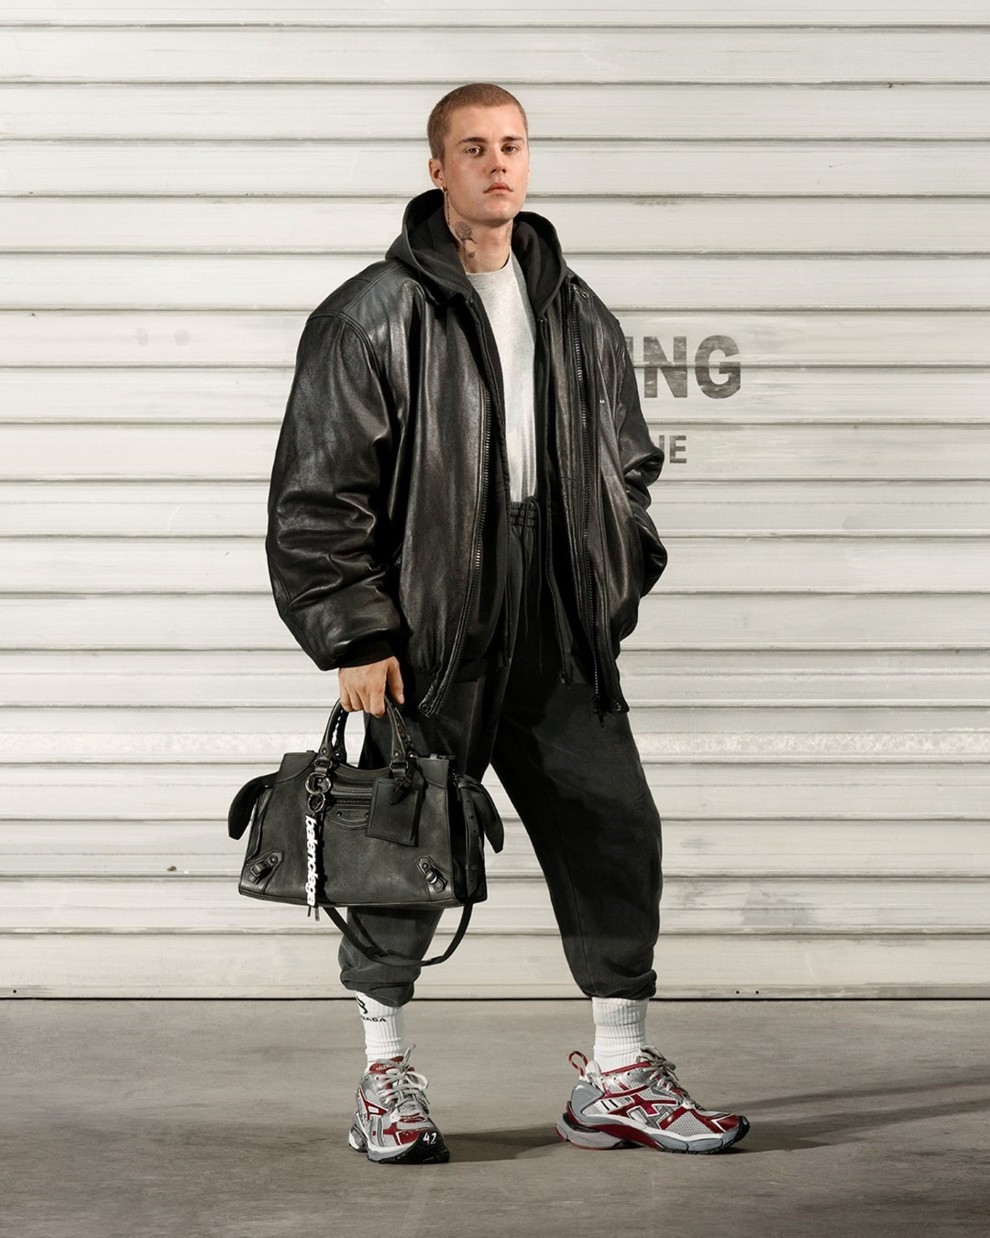 Джастин Бибер в рекламной кампании Balenciaga осень-зима 2021/2022